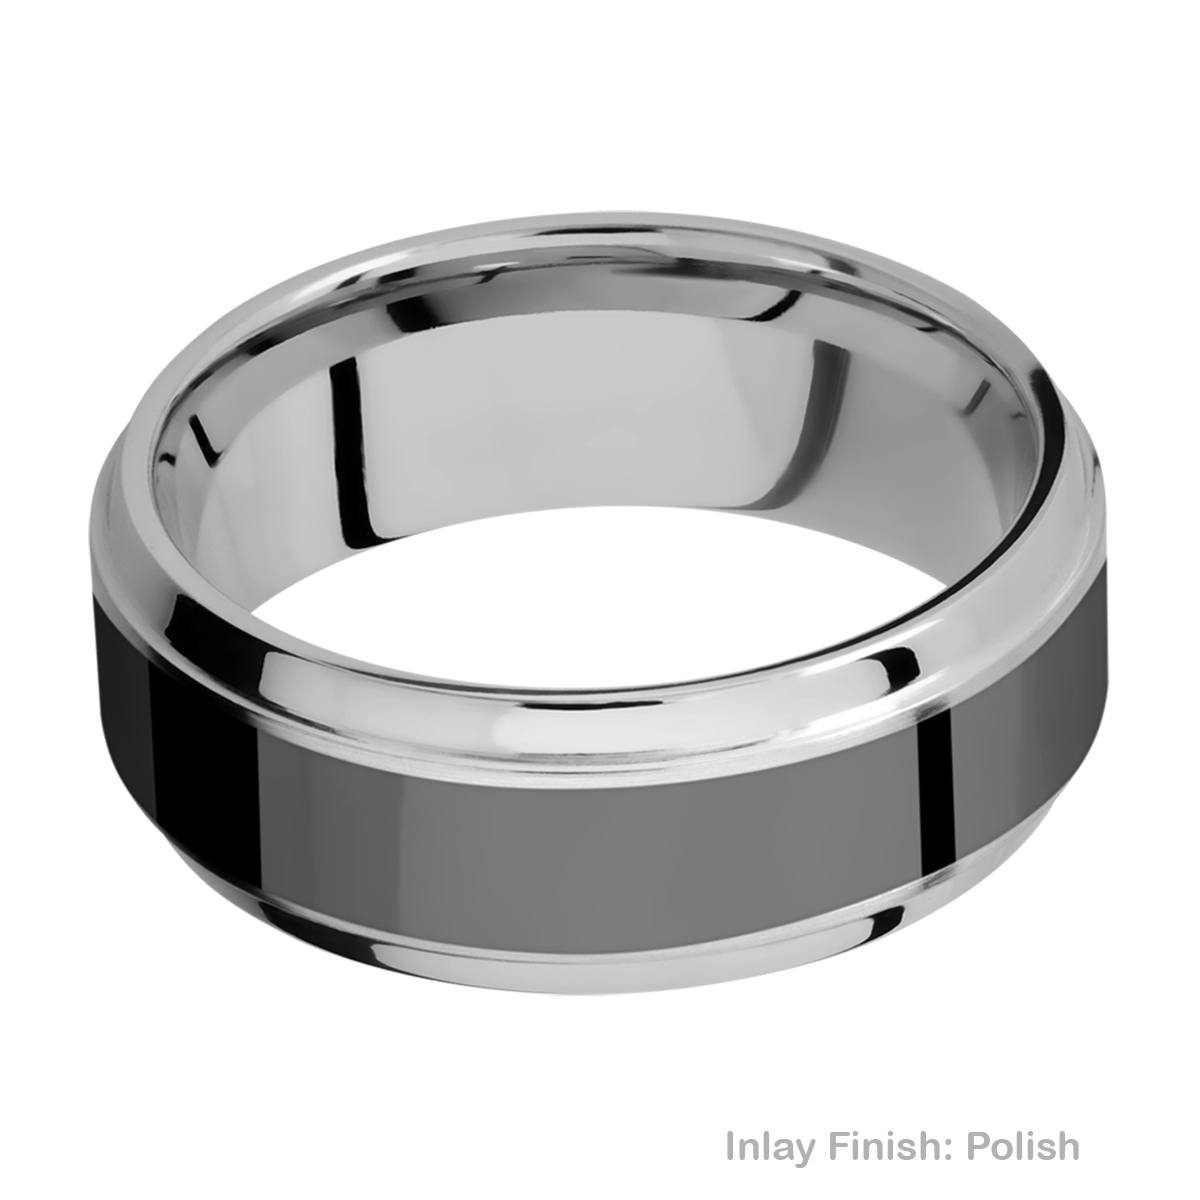 Lashbrook PF8B15(S)/ZIRCONIUM Titanium Wedding Ring or Band